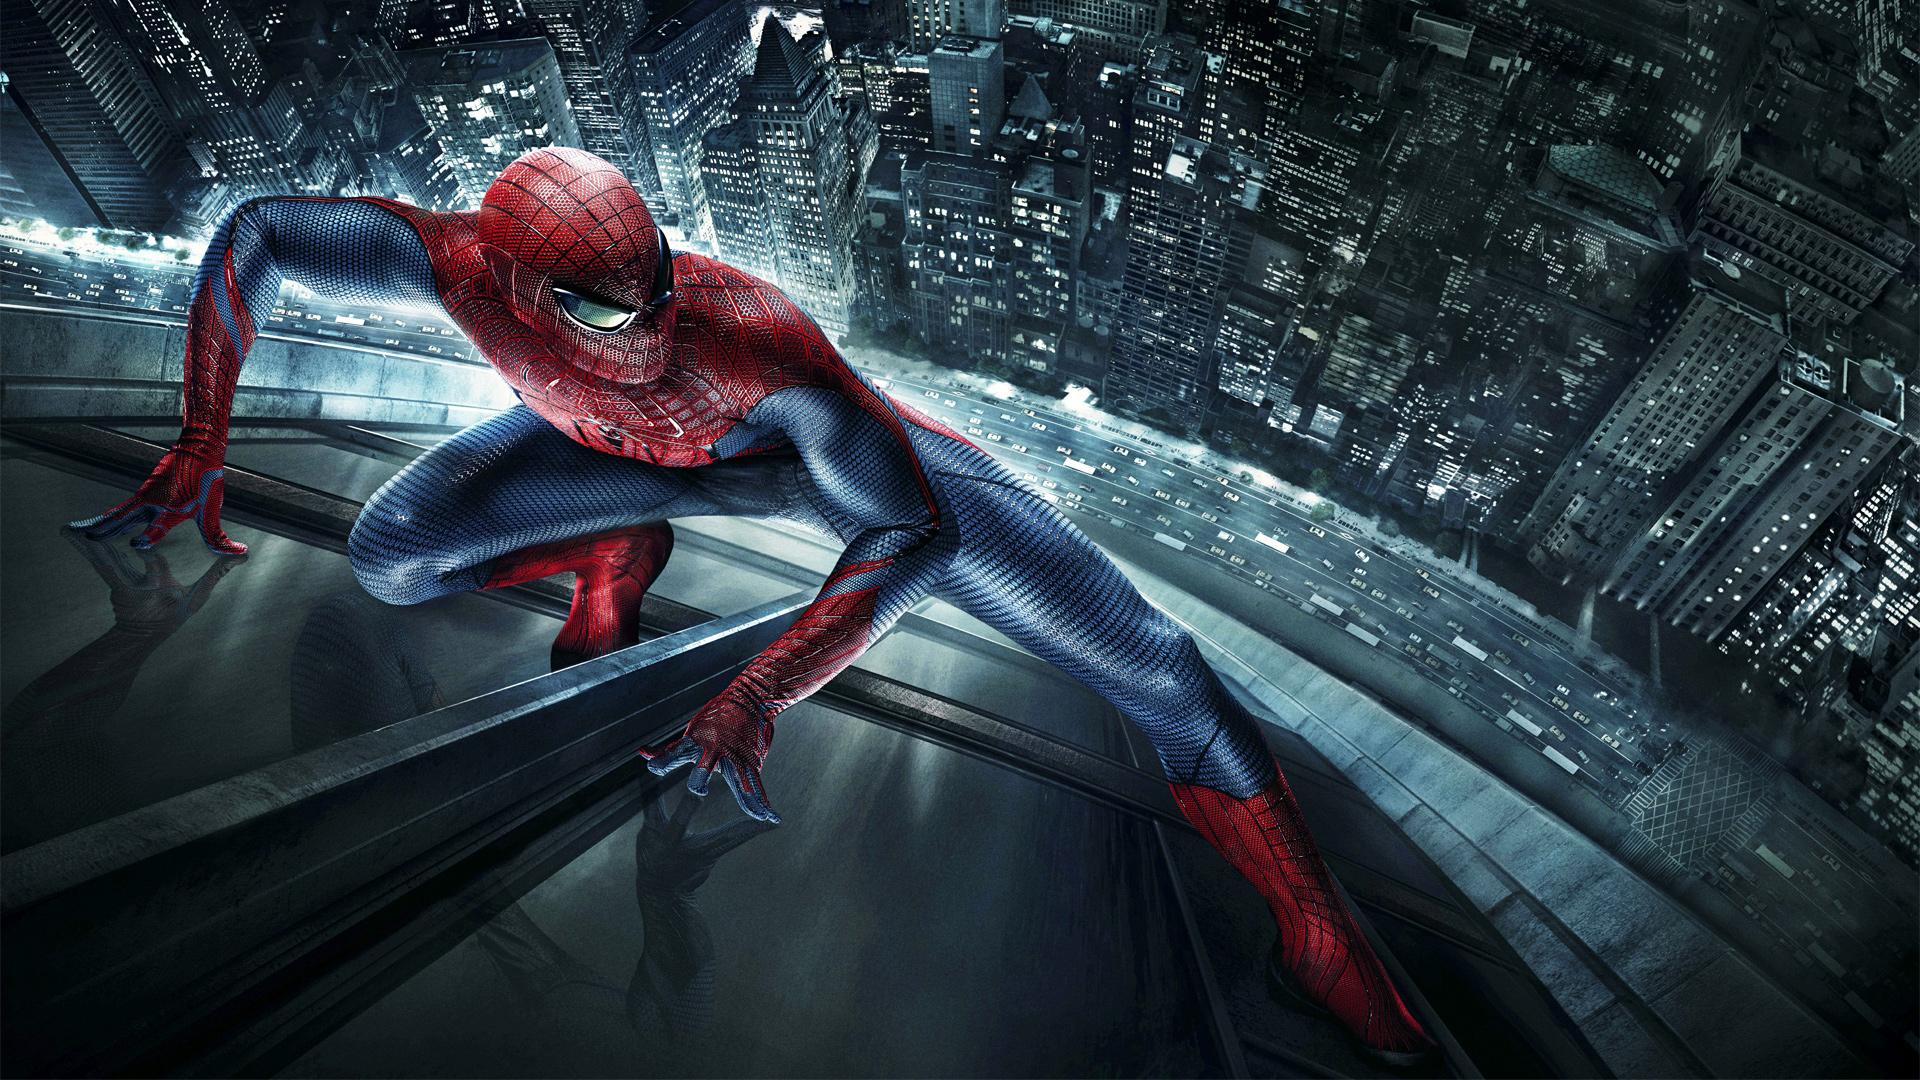 amazing spiderman 3 full movie indonesia